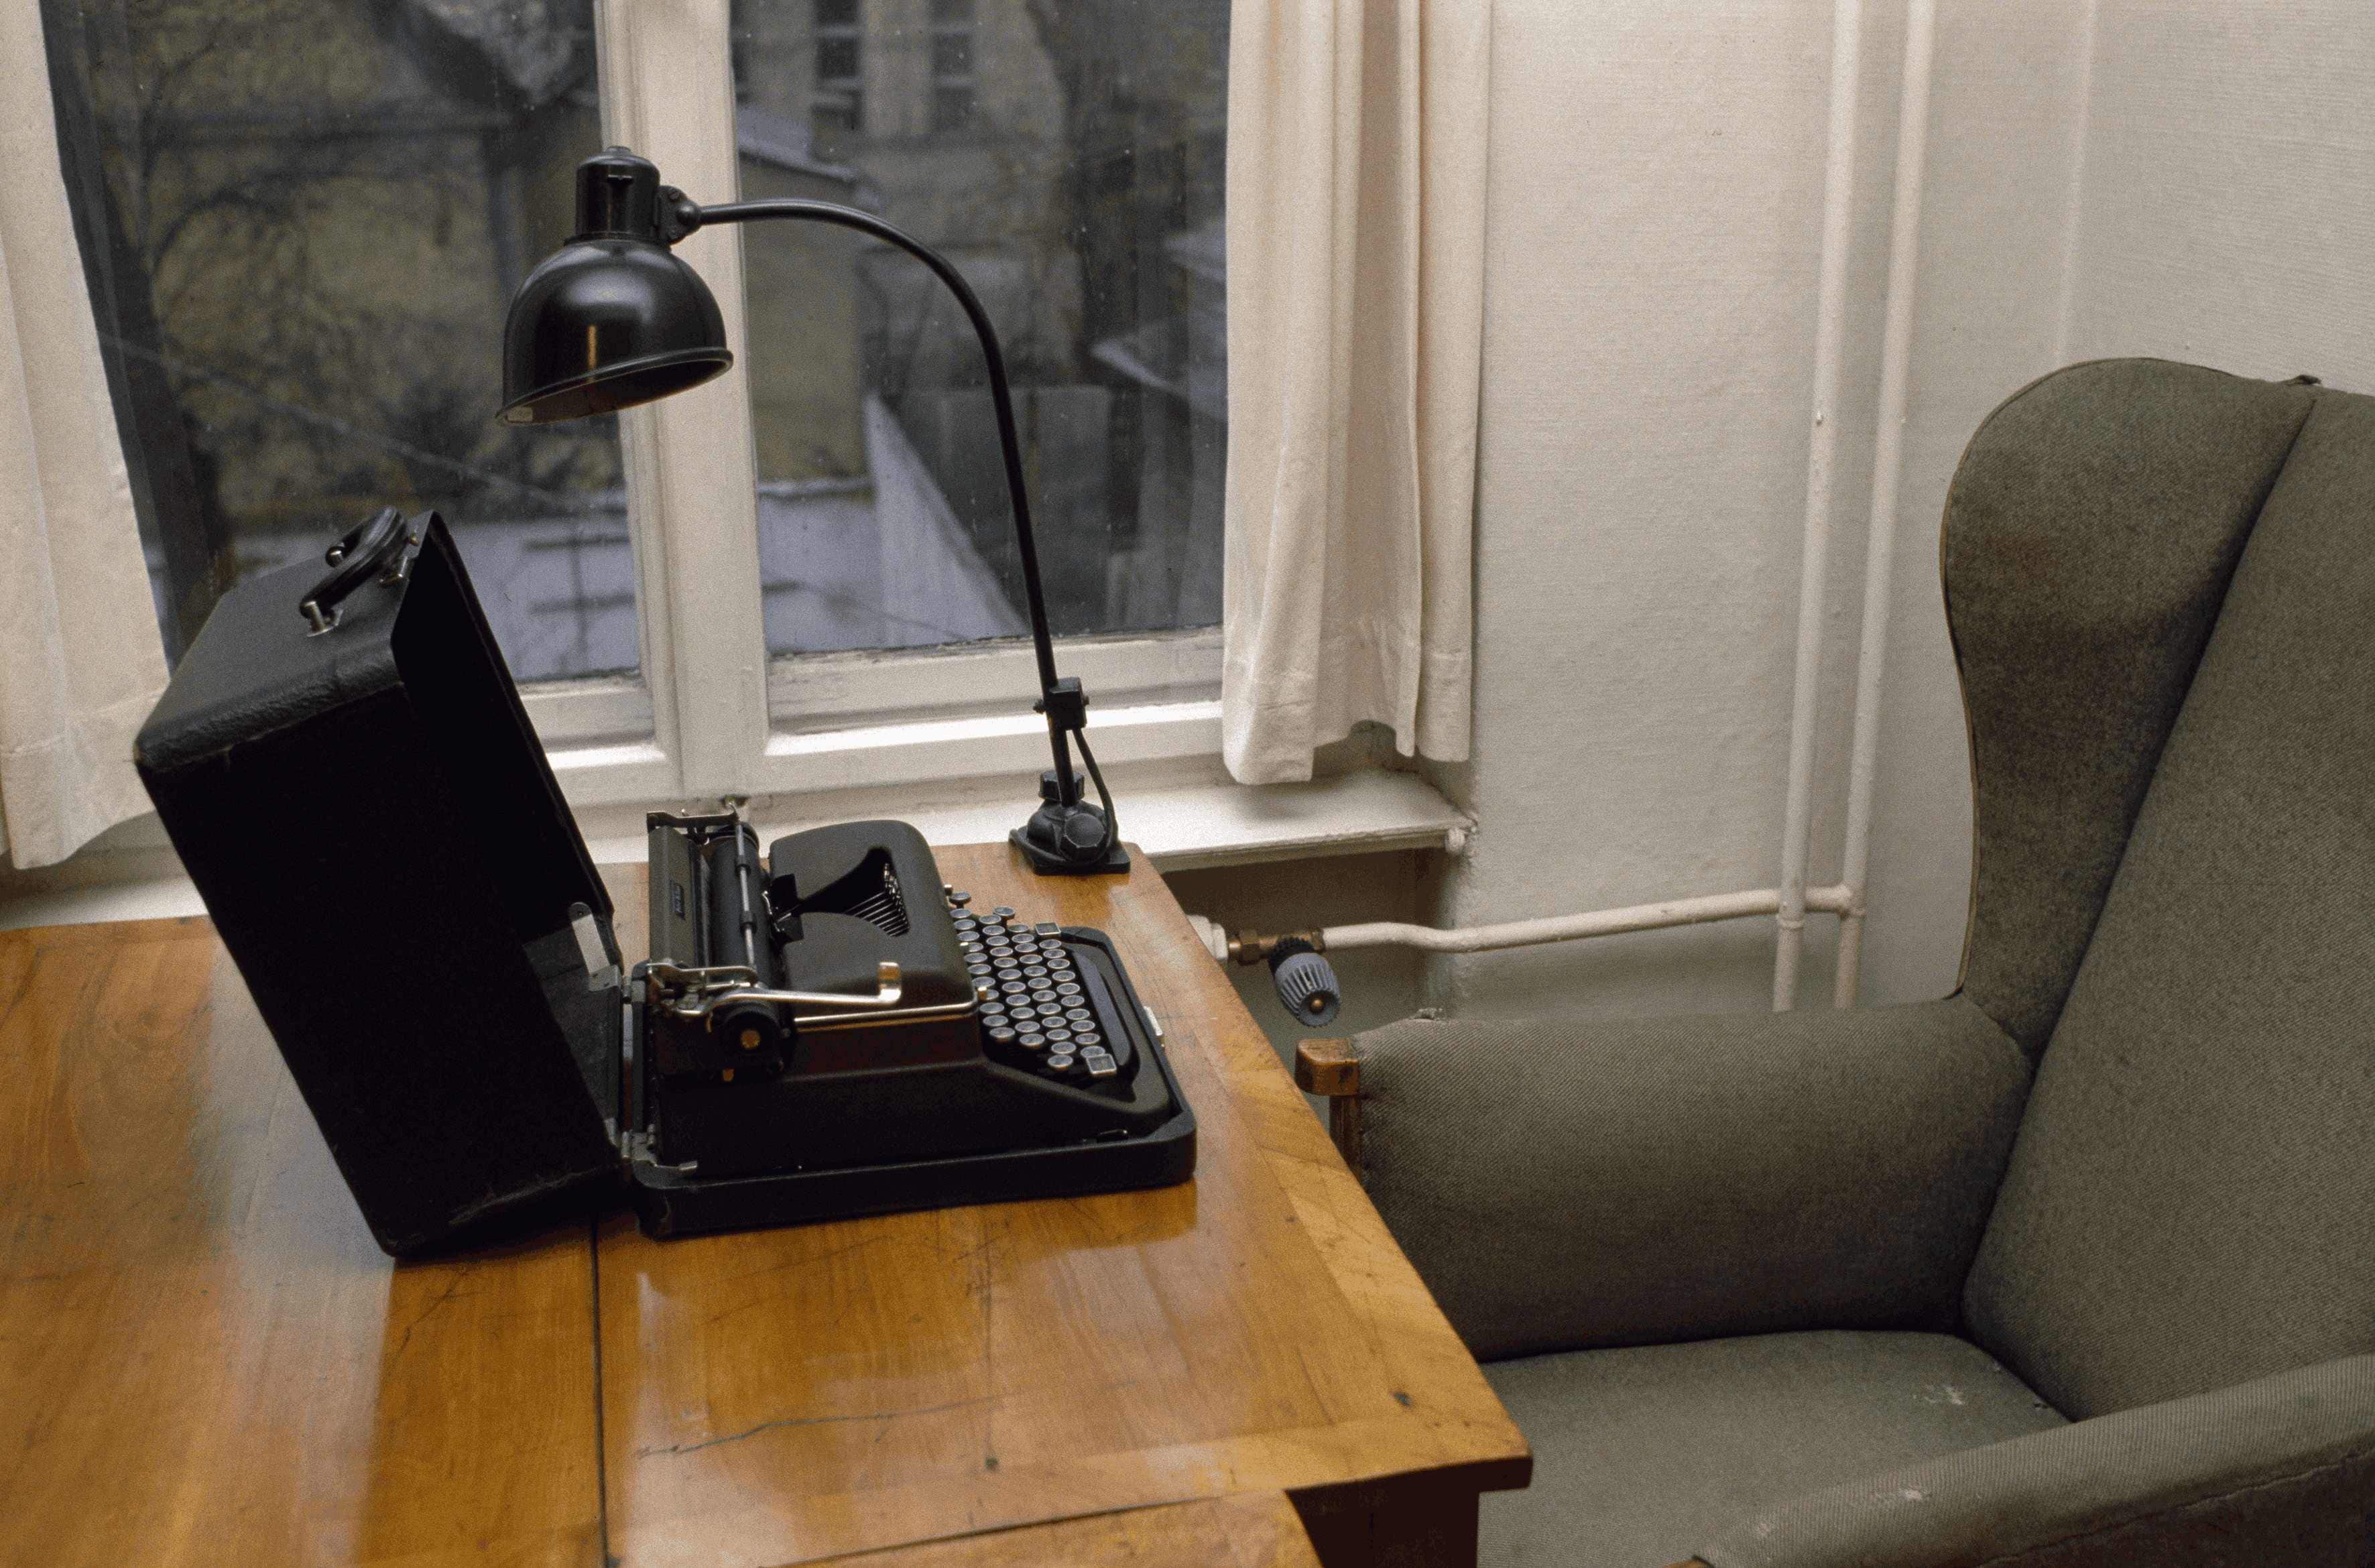 Berlino, dicembre 1​989, scrivania di​ Bertolt Brecht nella sua casa​ a Chausseestrasse, dove lui e​ la moglie Helene Weigel visse​ro fino al 1953